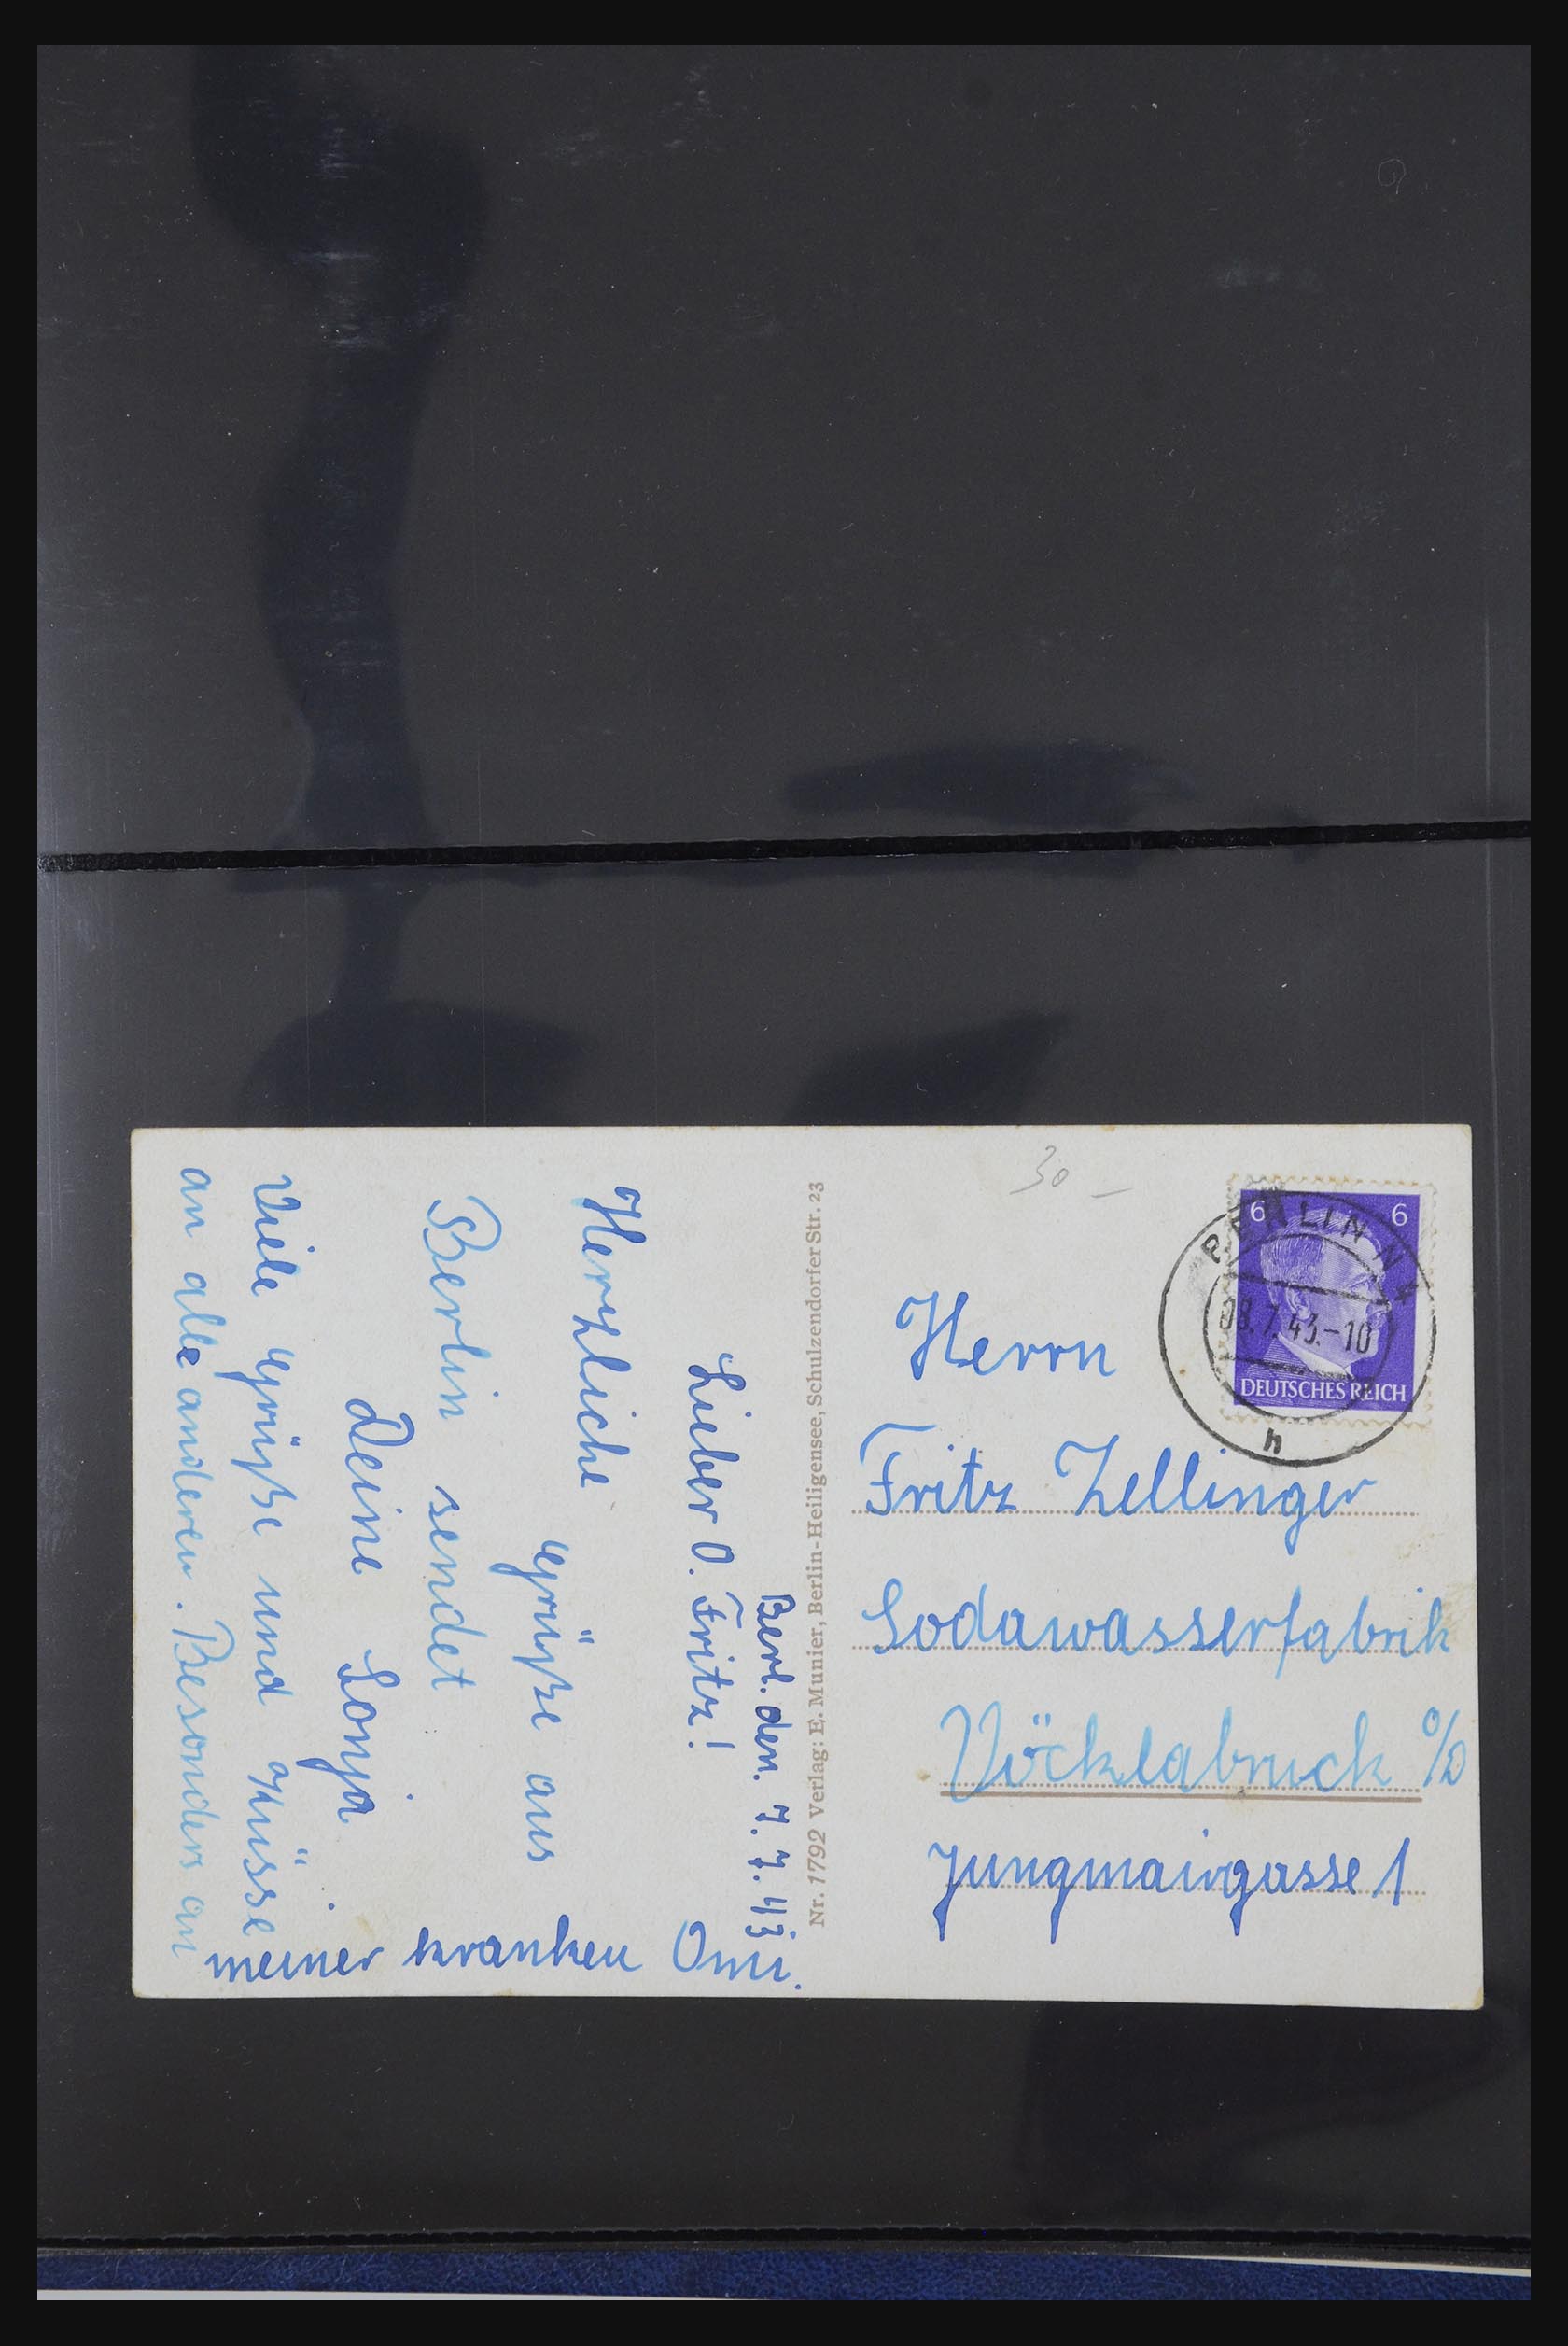 31952 401 - 31952 German Reich cards.